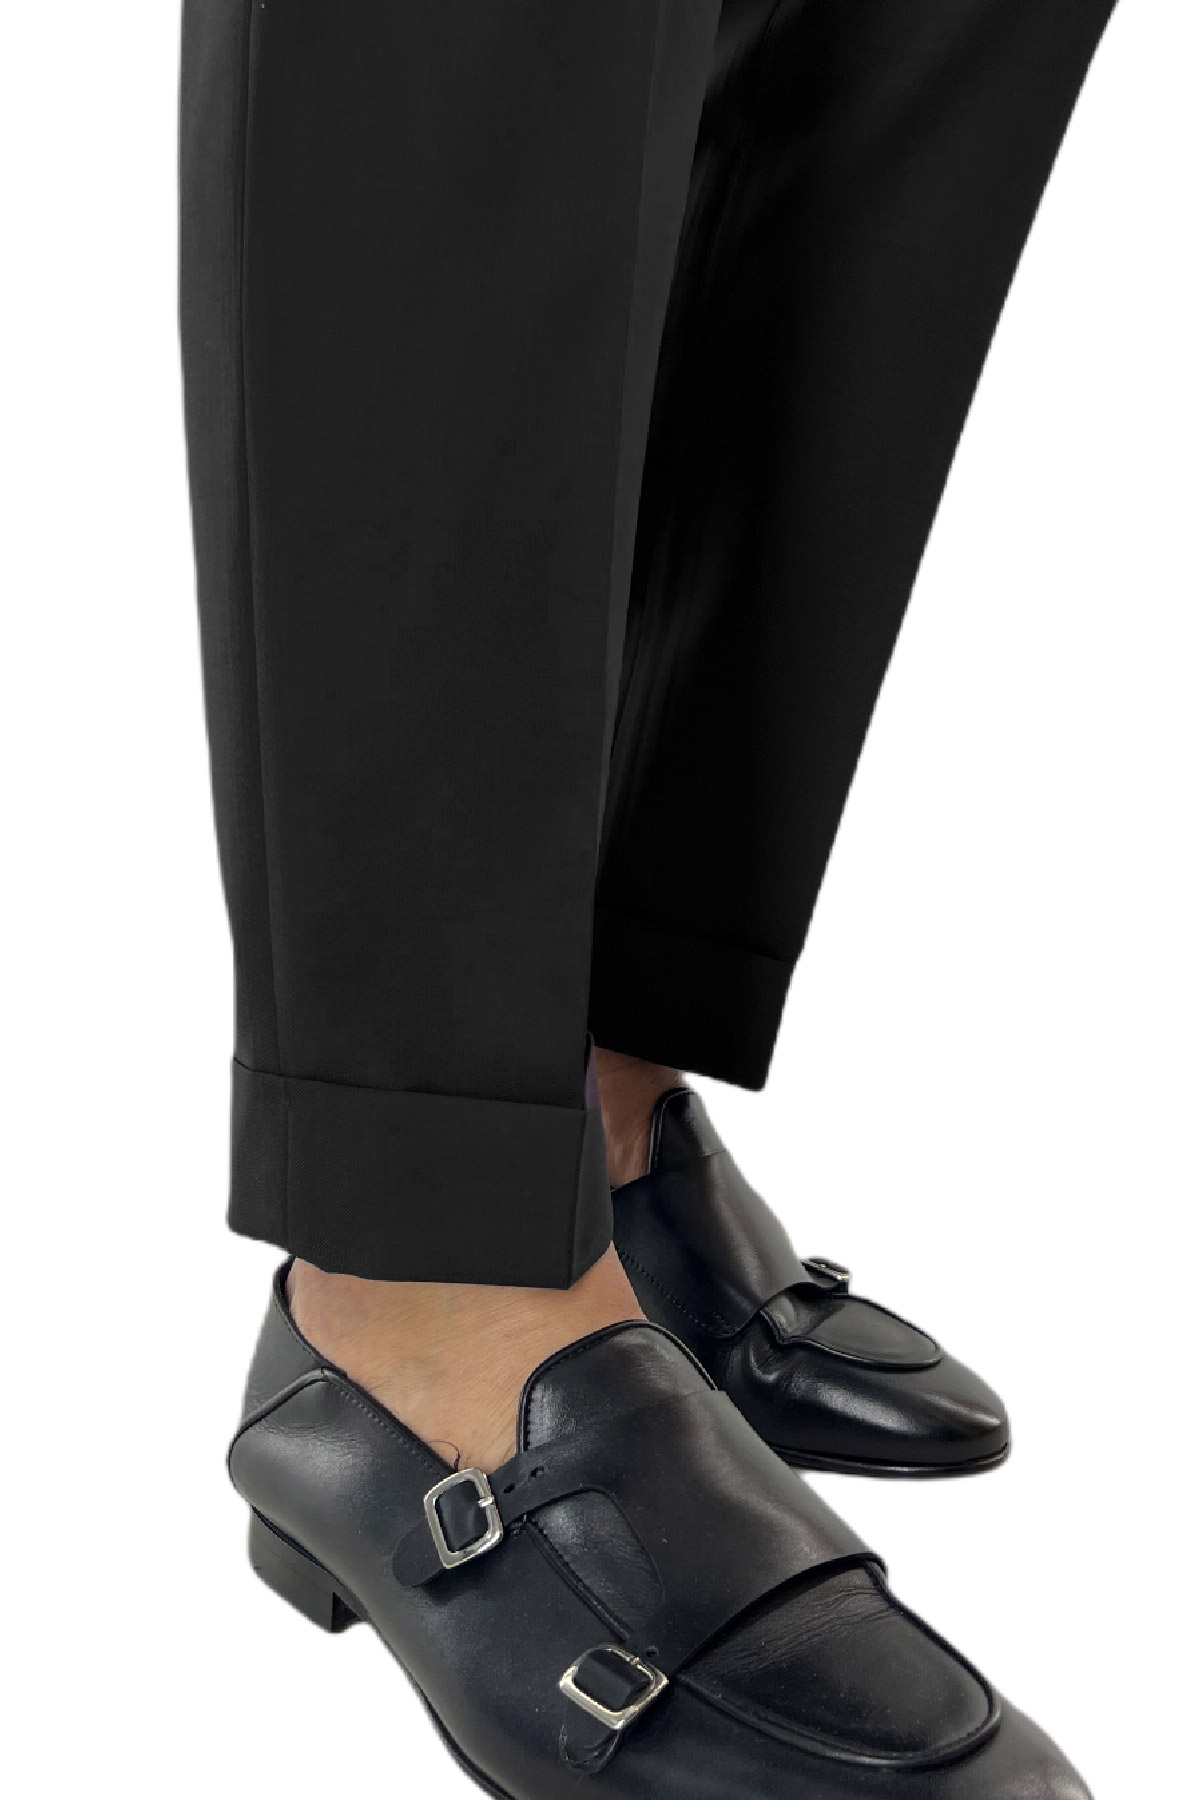 Pantalone uomo nero in fresco lana tinta unita vita alta fibbie laterali e risvolto 4cm